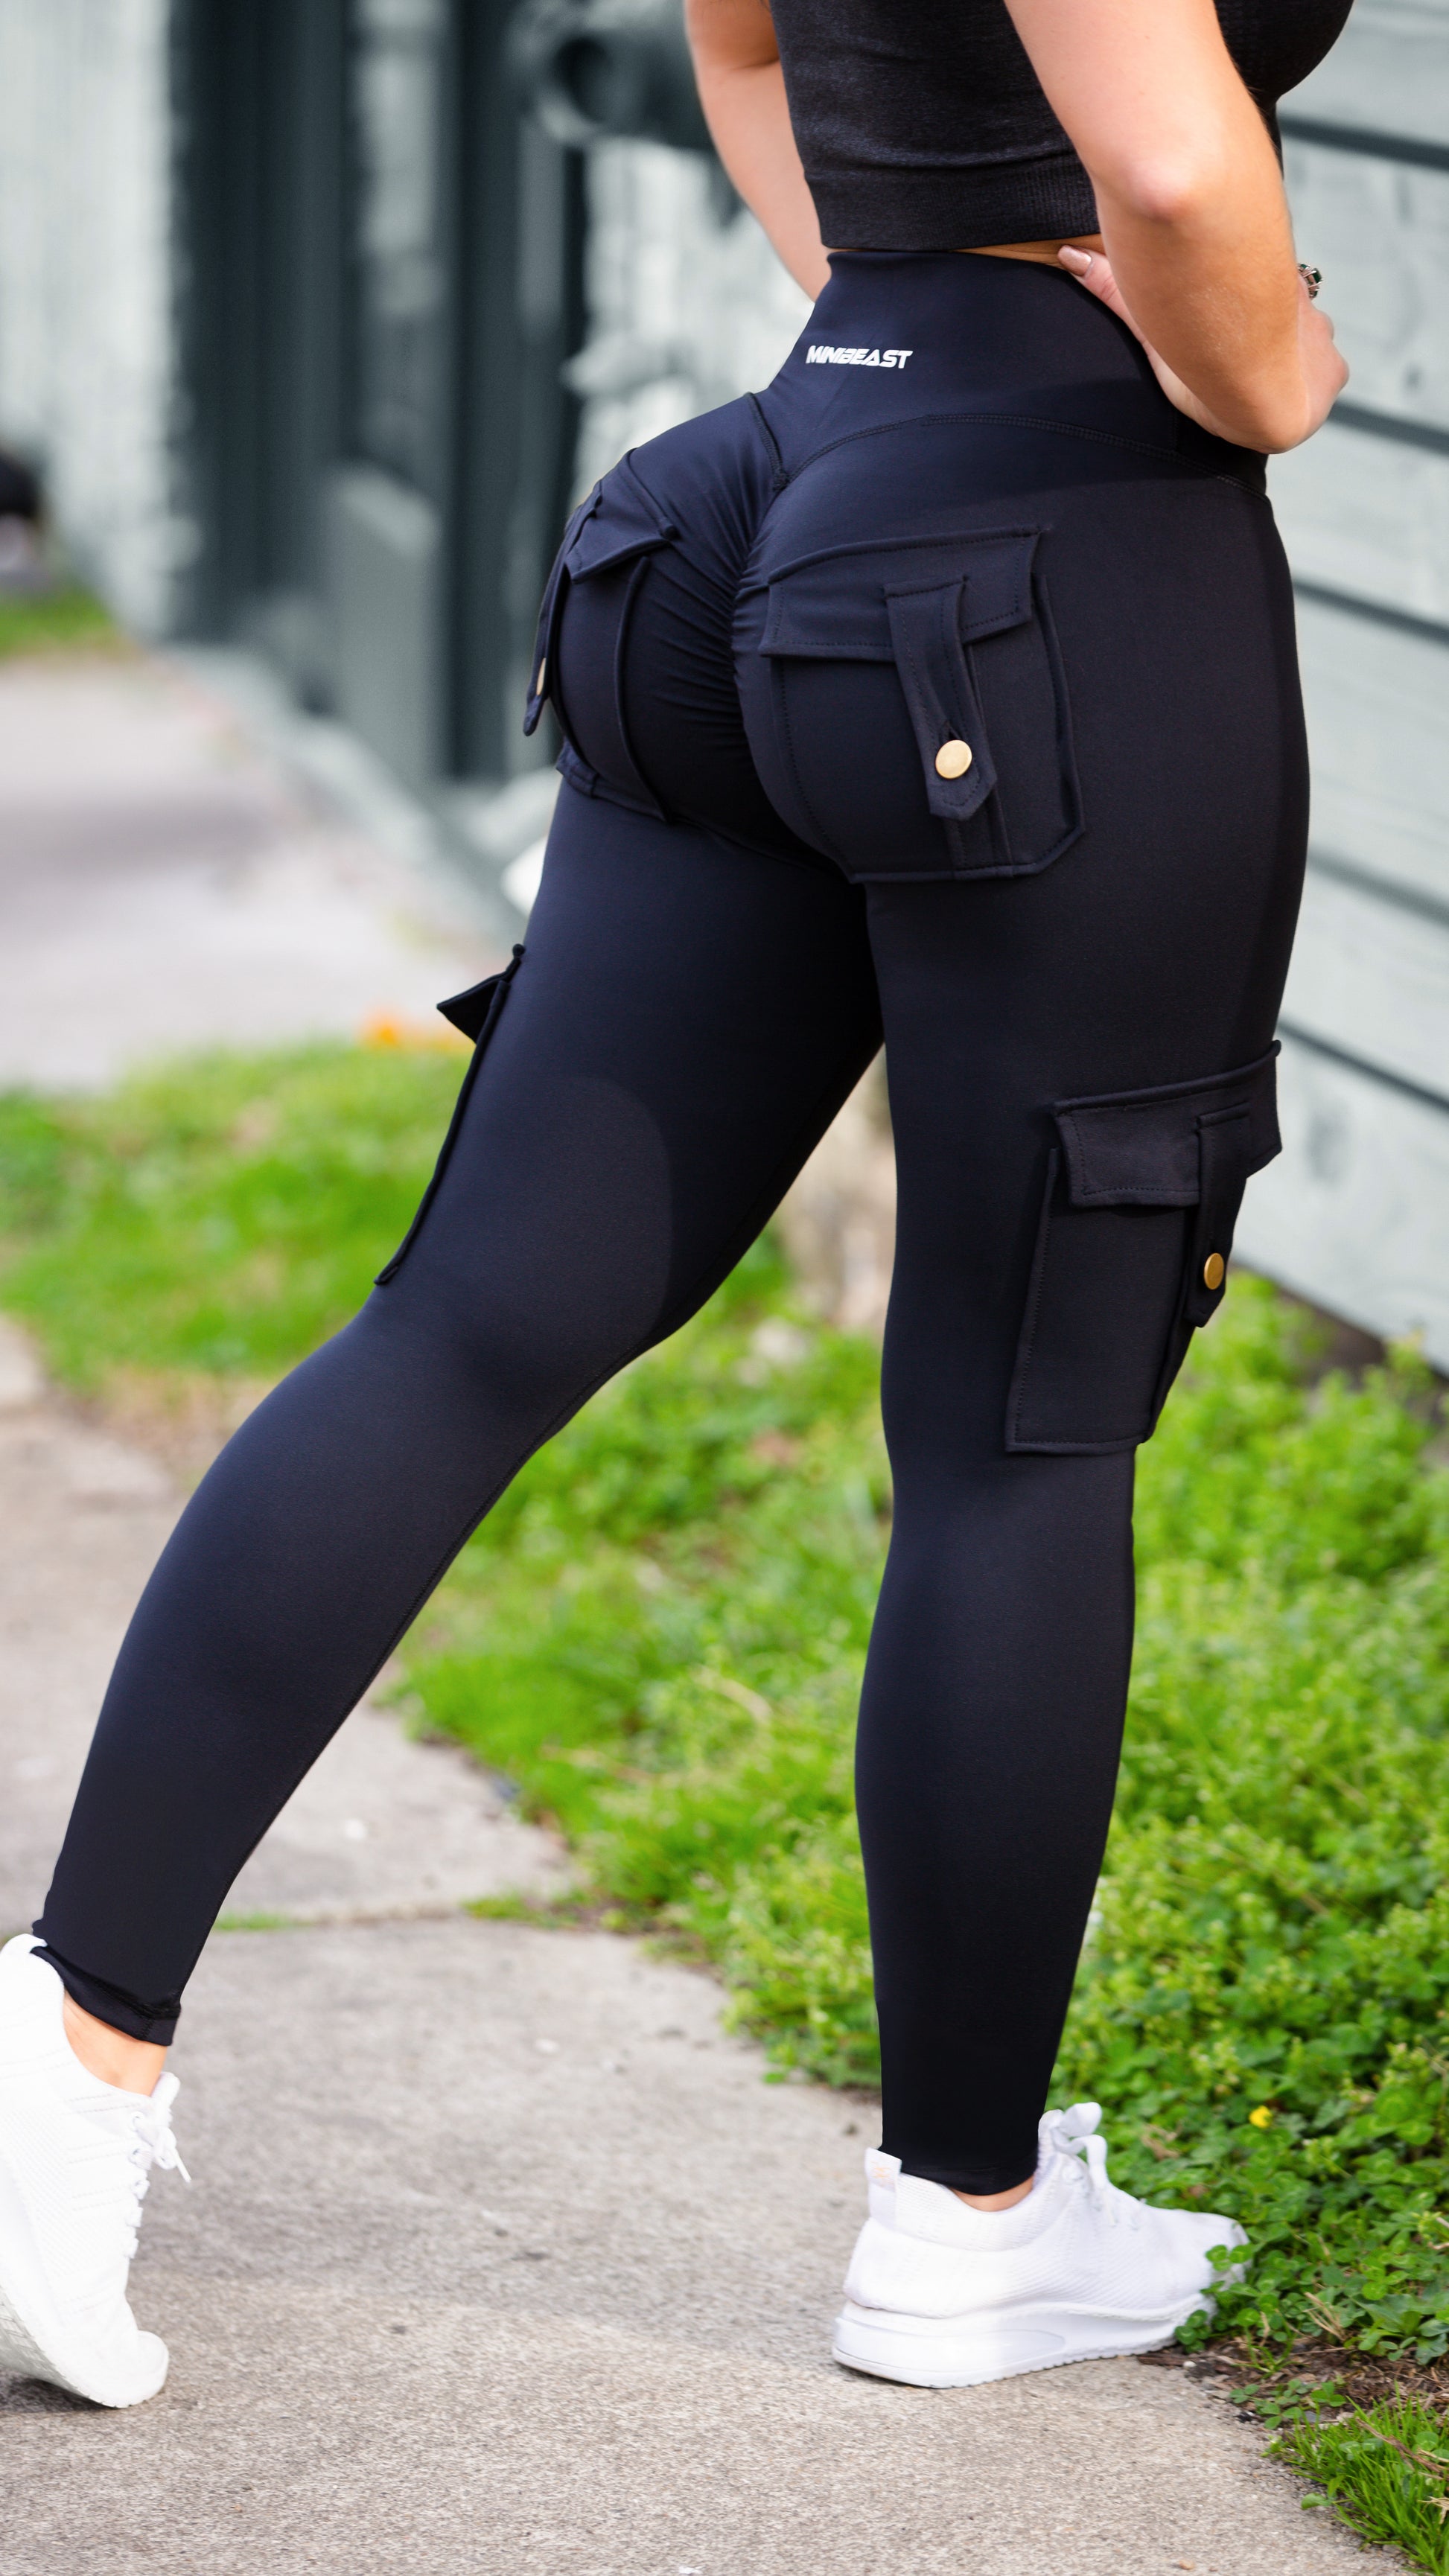 Cargo Power Leggings - Black and White  Black leggings, Cargo leggings,  Black and white models